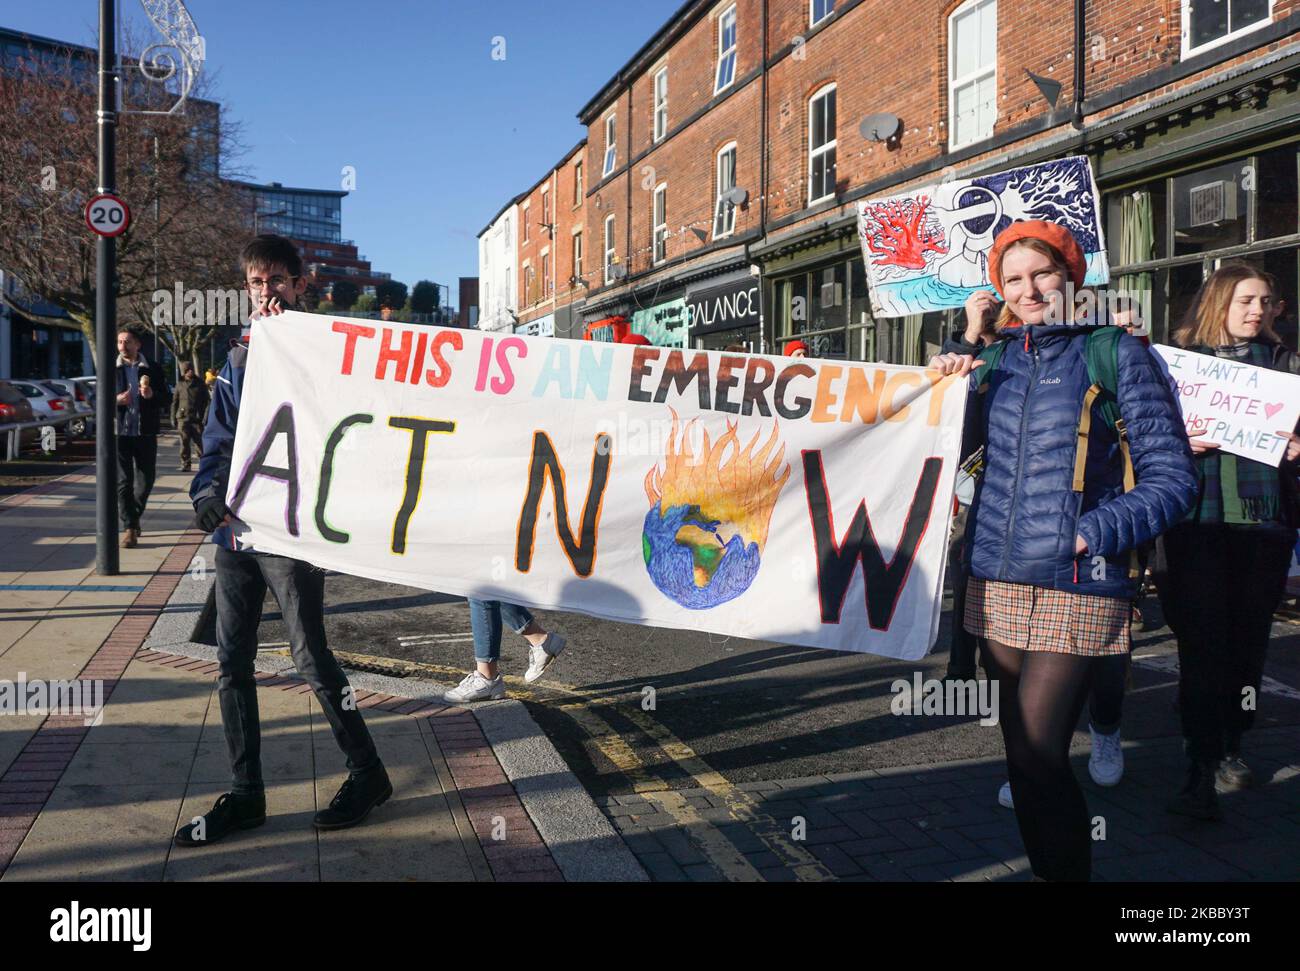 Studenten tragen ein Banner, während sie während des Klimaproteste am 29. November 2019 in Sheffield, England, durch die Straßen von Sheffield marschieren. Hunderte von Studenten gehen aus ihrem Unterricht, während sie auf die Straße gehen, um einen Teil eines globalen Jugendschutzes gegen den Klimawandel zu demonstrieren. (Foto von Giannis Alexopoulos/NurPhoto) Stockfoto